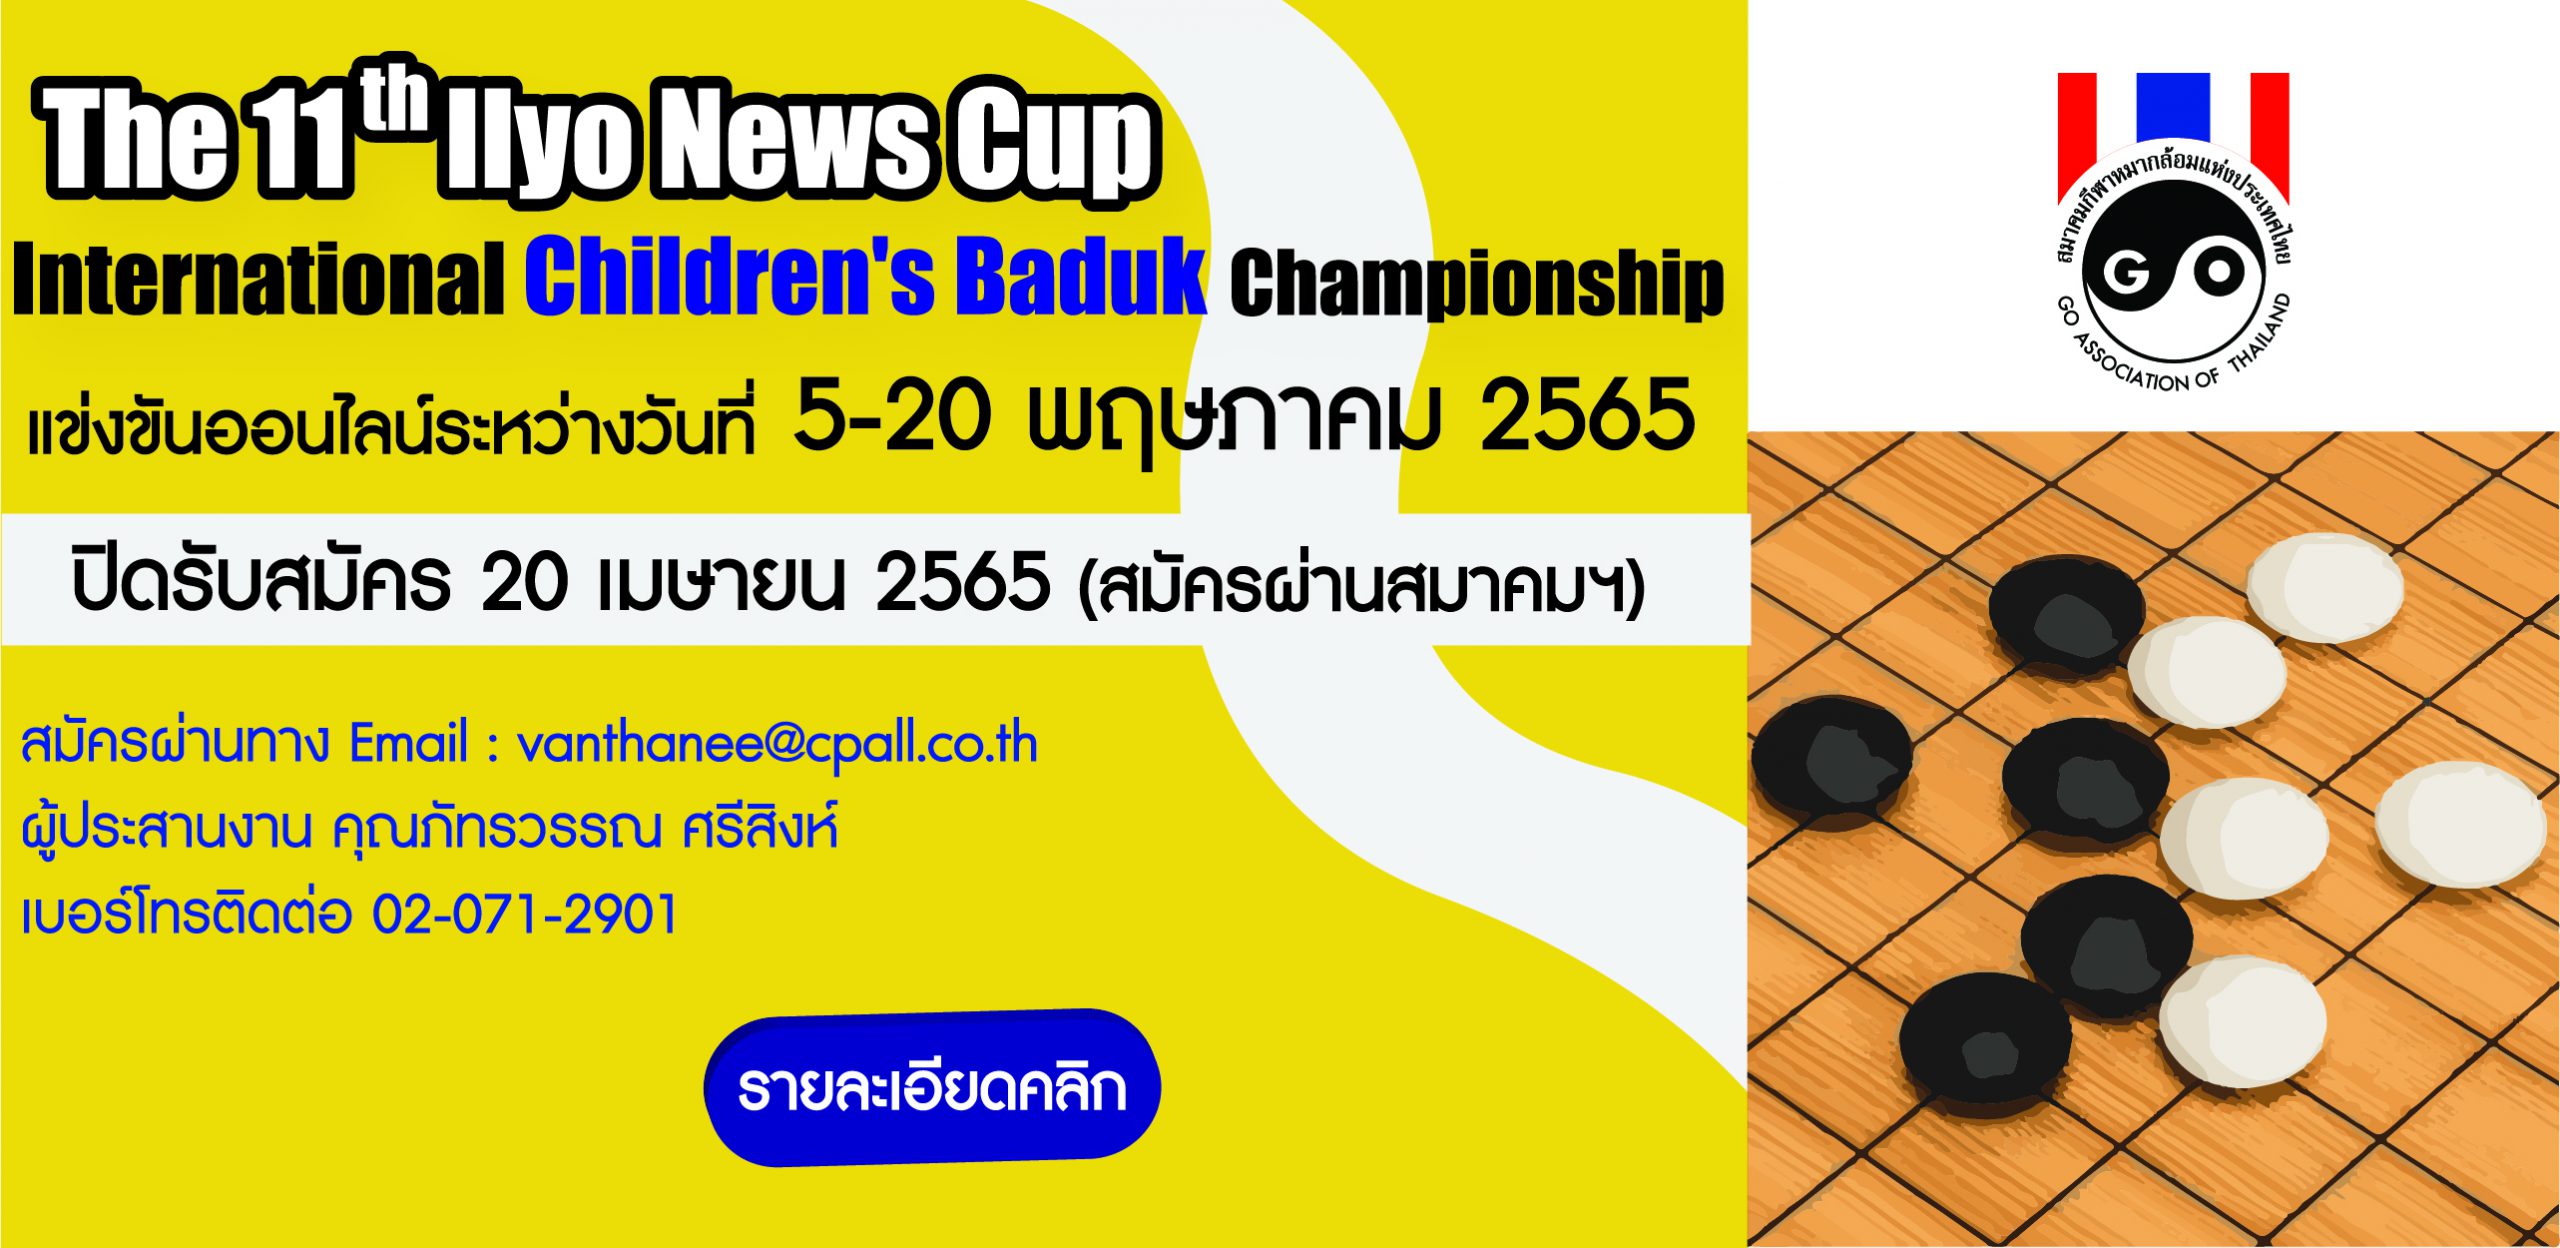 รับสมัคร The 11th Ilyo News Cup International Children’s Baduk Championship